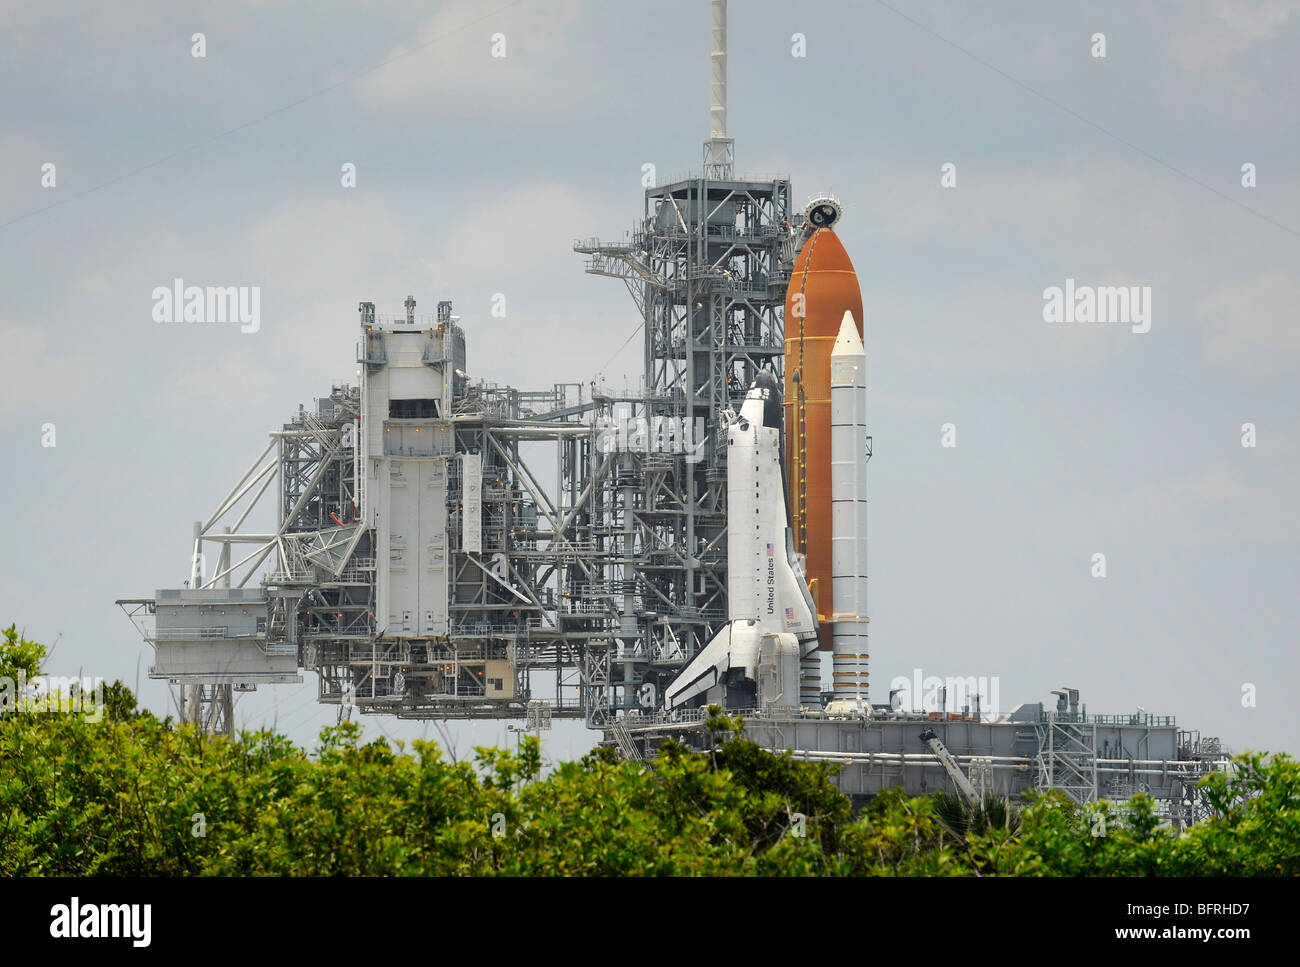 Giugno 12, 2009 - Lo Space Shuttle Endeavour è in posizione a Launch Pad 39A presso il Kennedy Space Center di Cape Canaveral, in Florida. Foto Stock